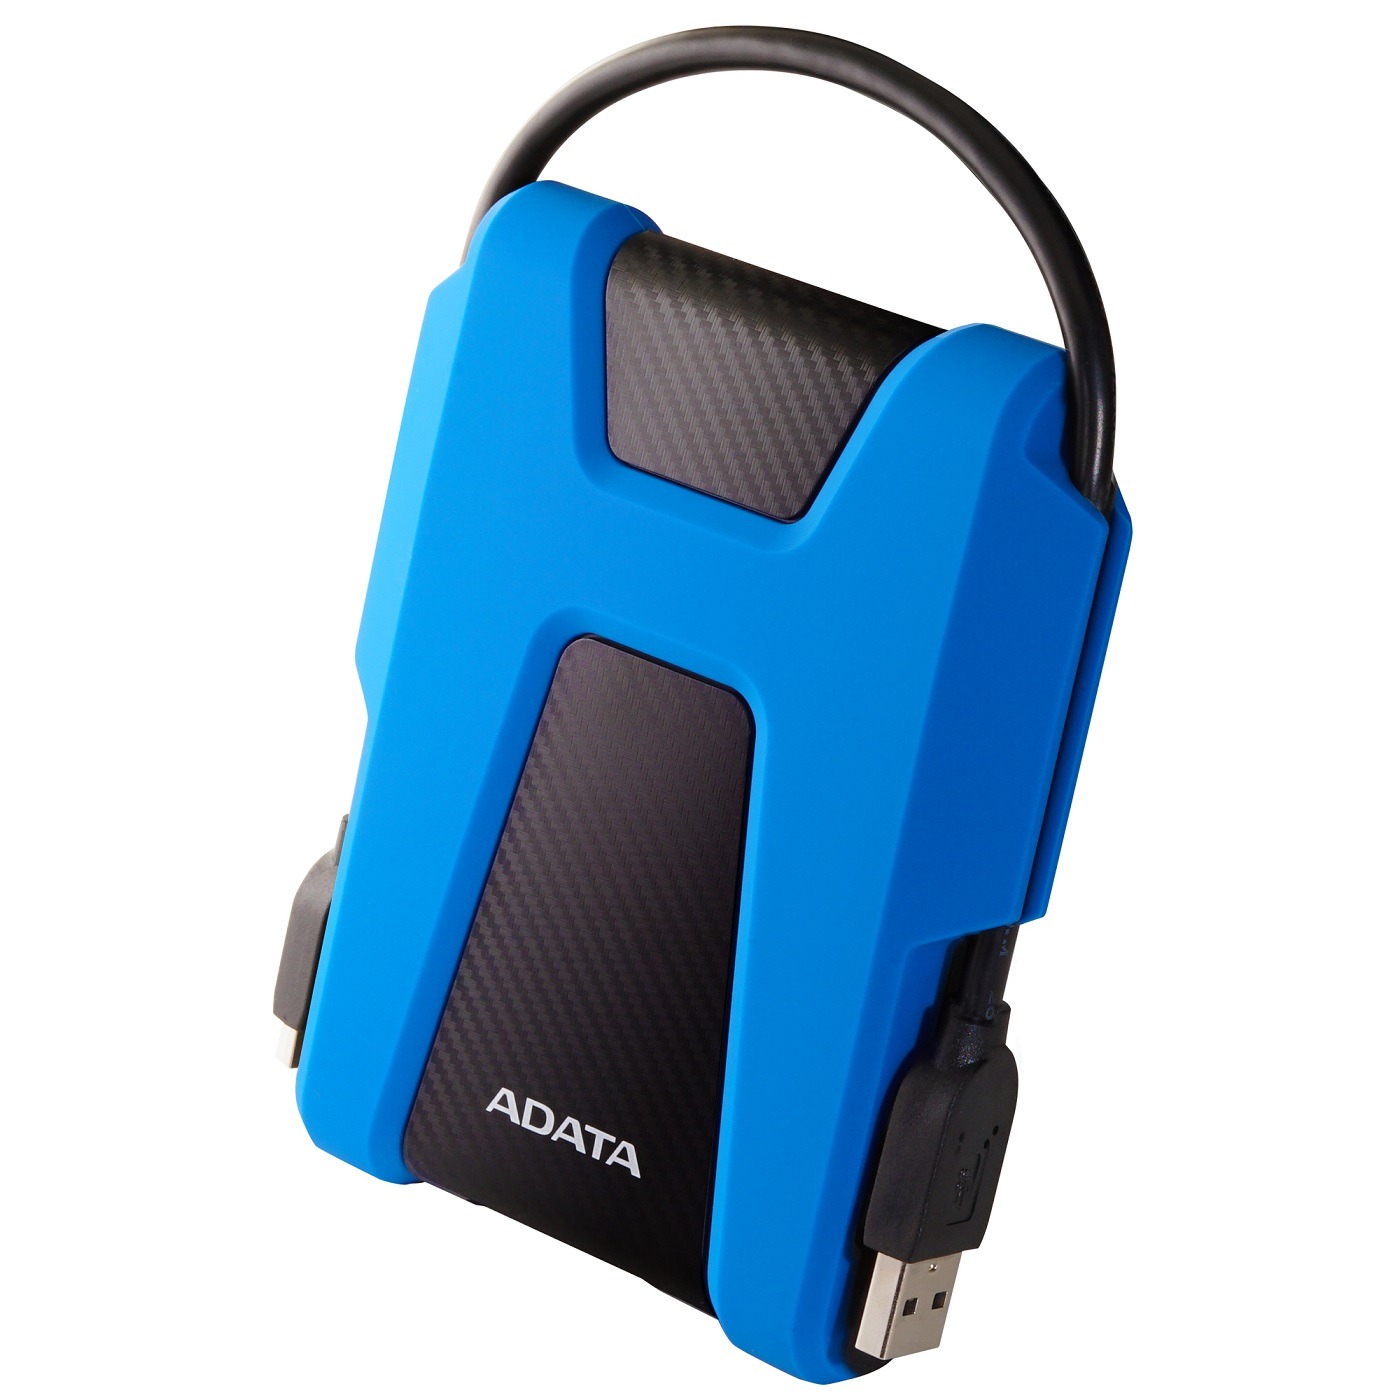 ADATA запускает линейку защищенных портативных дисков (HD650, HD330, HD680, HD770G)